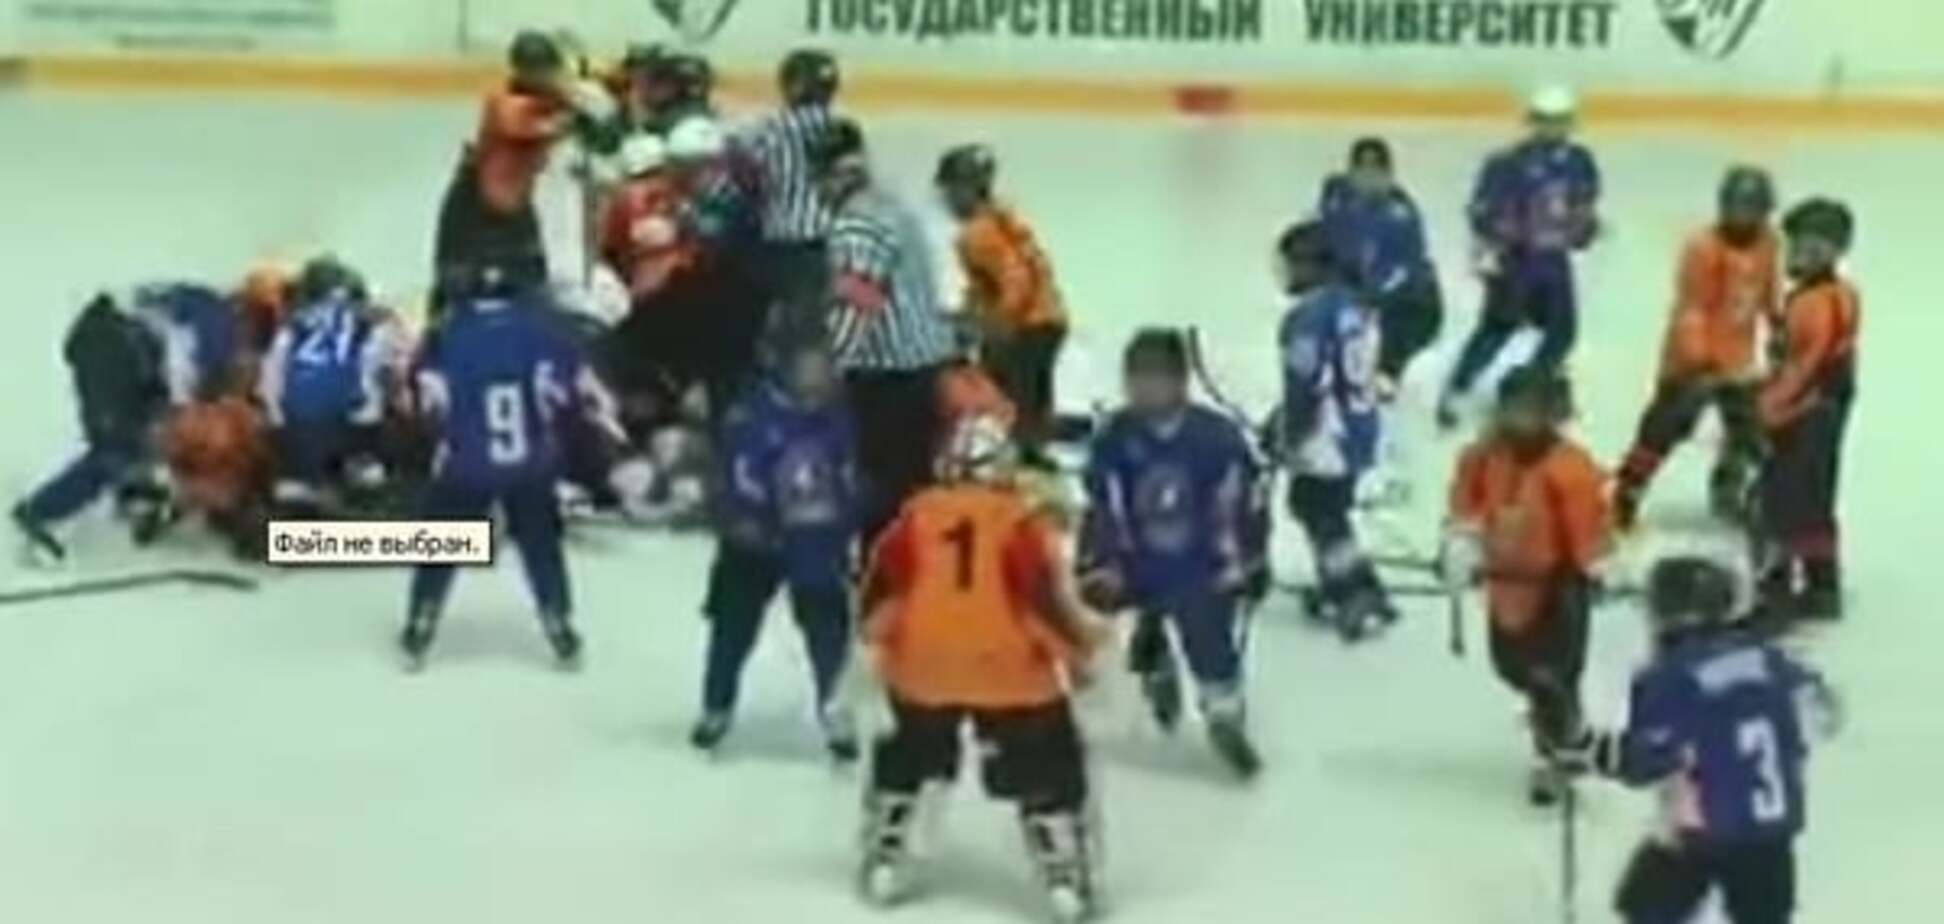 Расстроились: белорусские хоккеисты после поражения подрались с украинцами